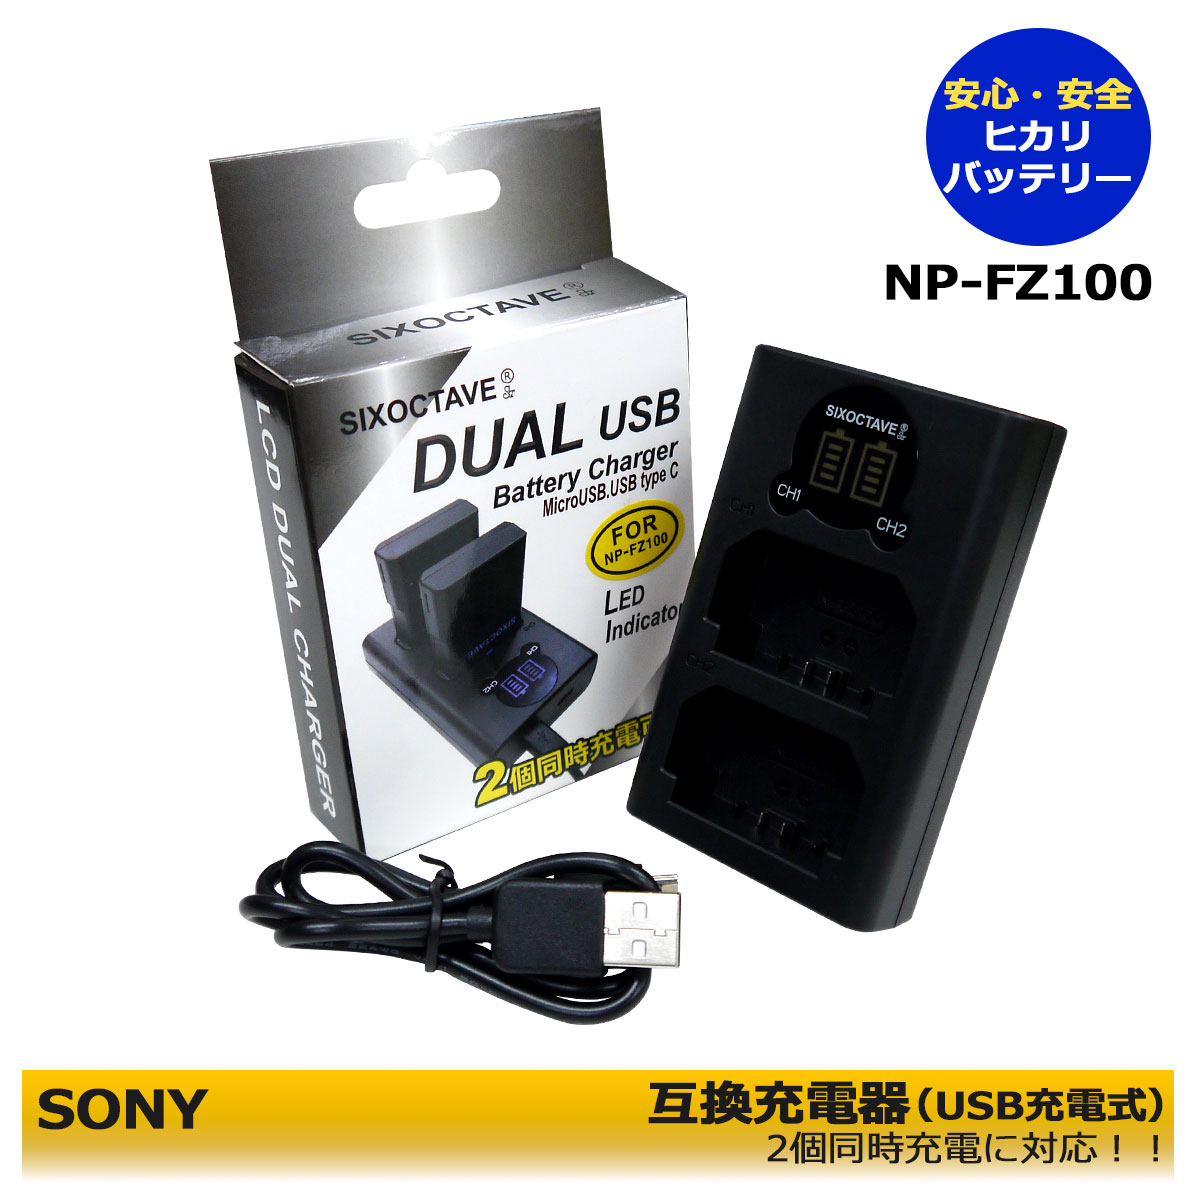 楽天市場】SONY NP-FW50互換急速充電器USBチャージャー BC-VW1NEX-C3 